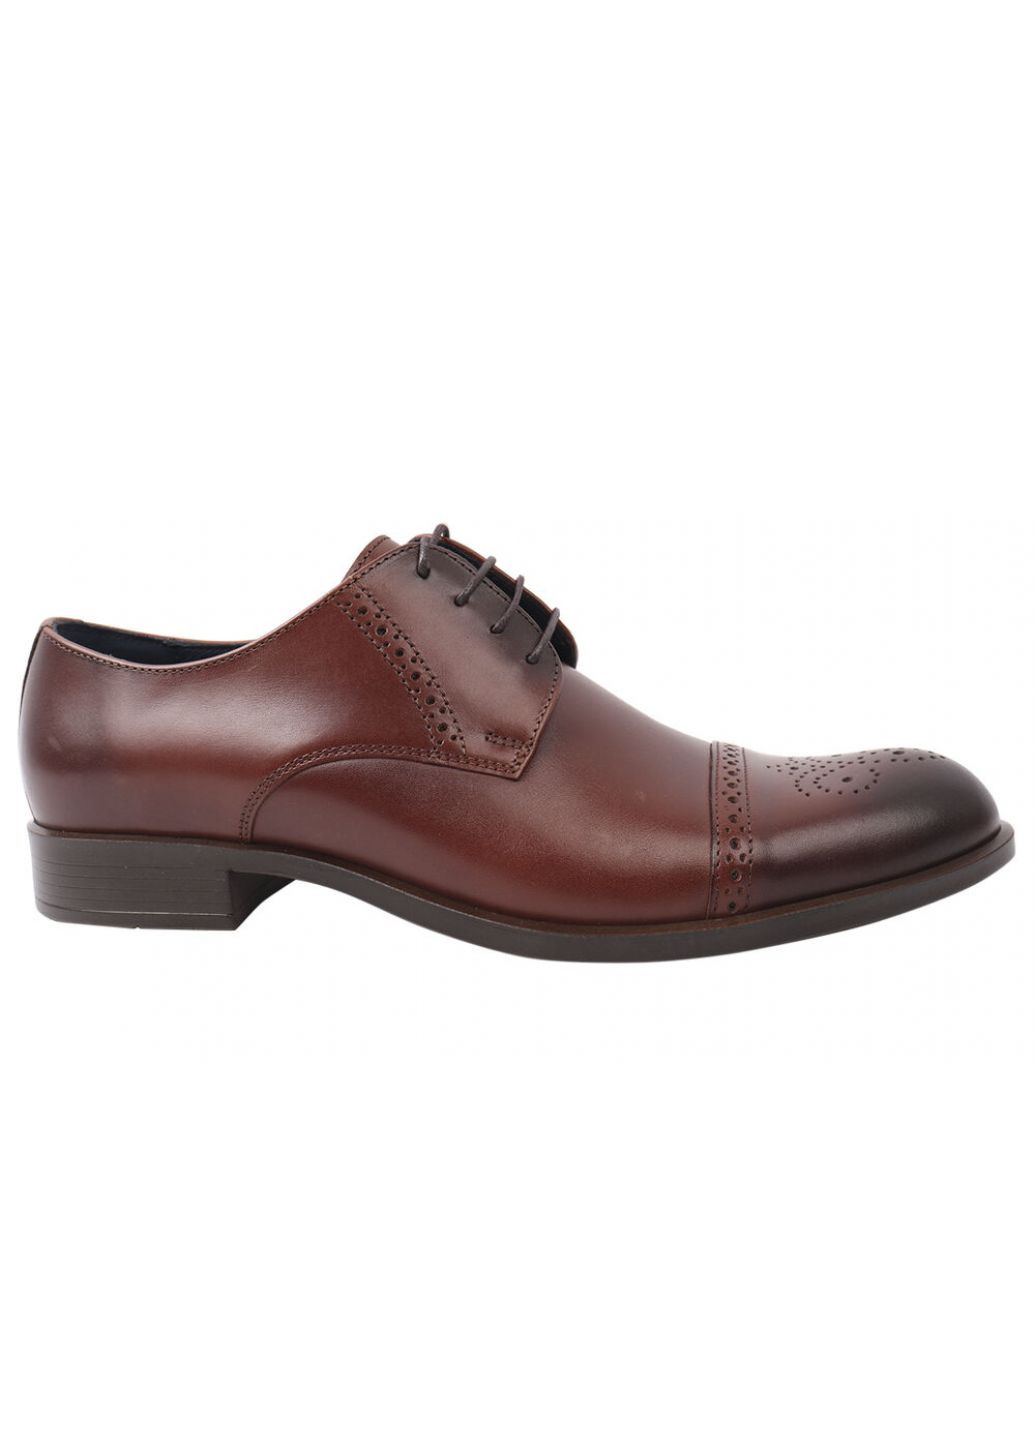 Туфлі чоловічі з натуральної шкіри, на шнурівці, на низькому ходу, коричневі, Conhpol 286-21dt (257419929)